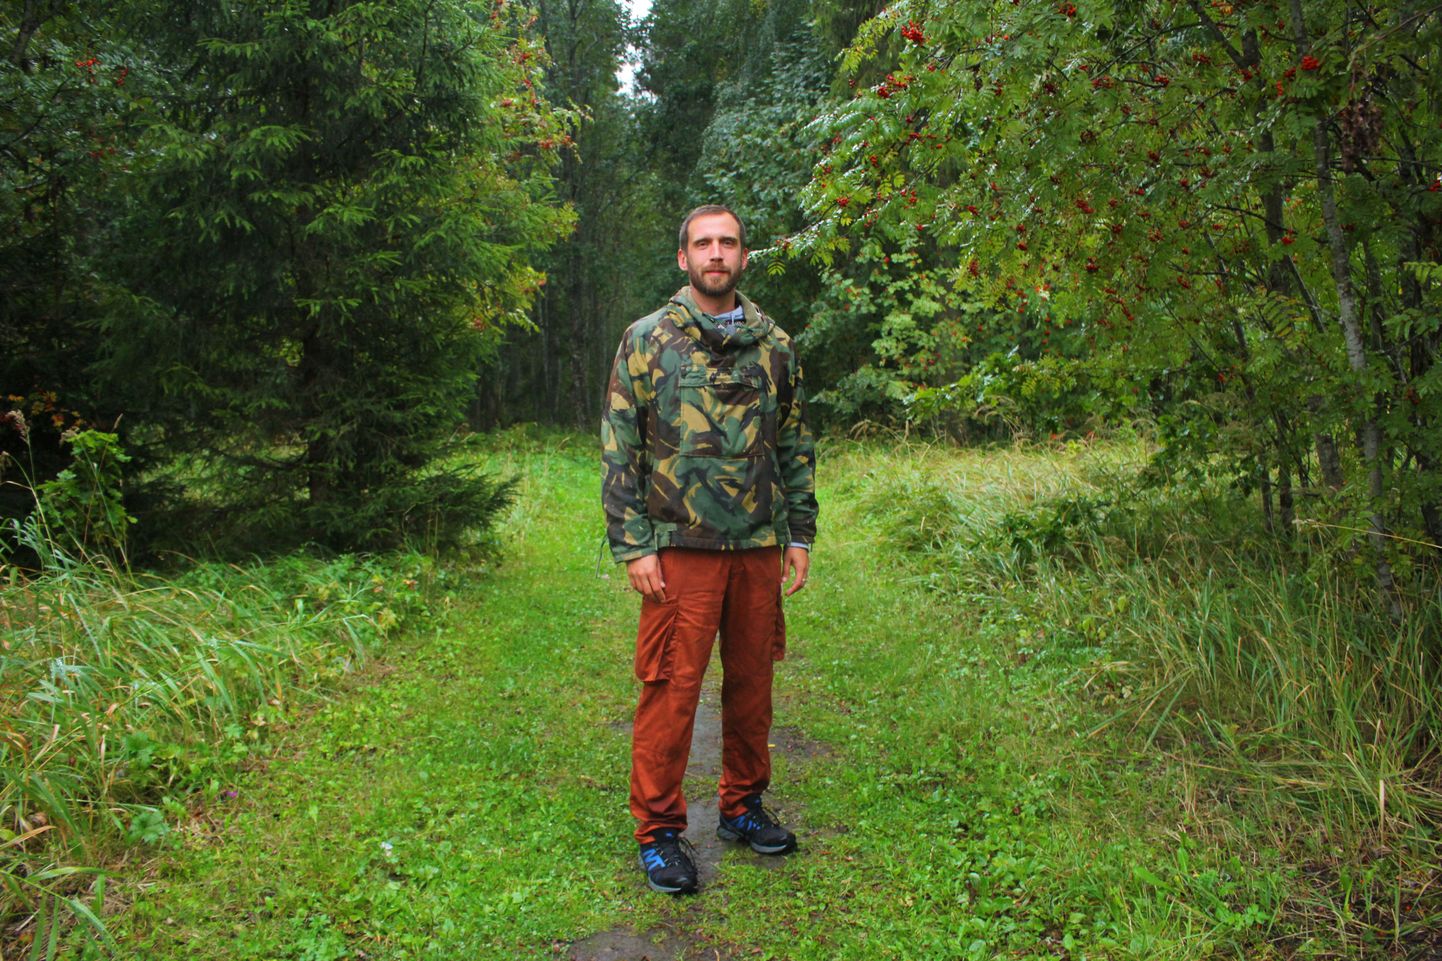 33aastase Egon Ilissoni üheks kireks paljude seas on loodus – matkamine, kalastamine või lihtsalt kusagil kännul 
istumine.